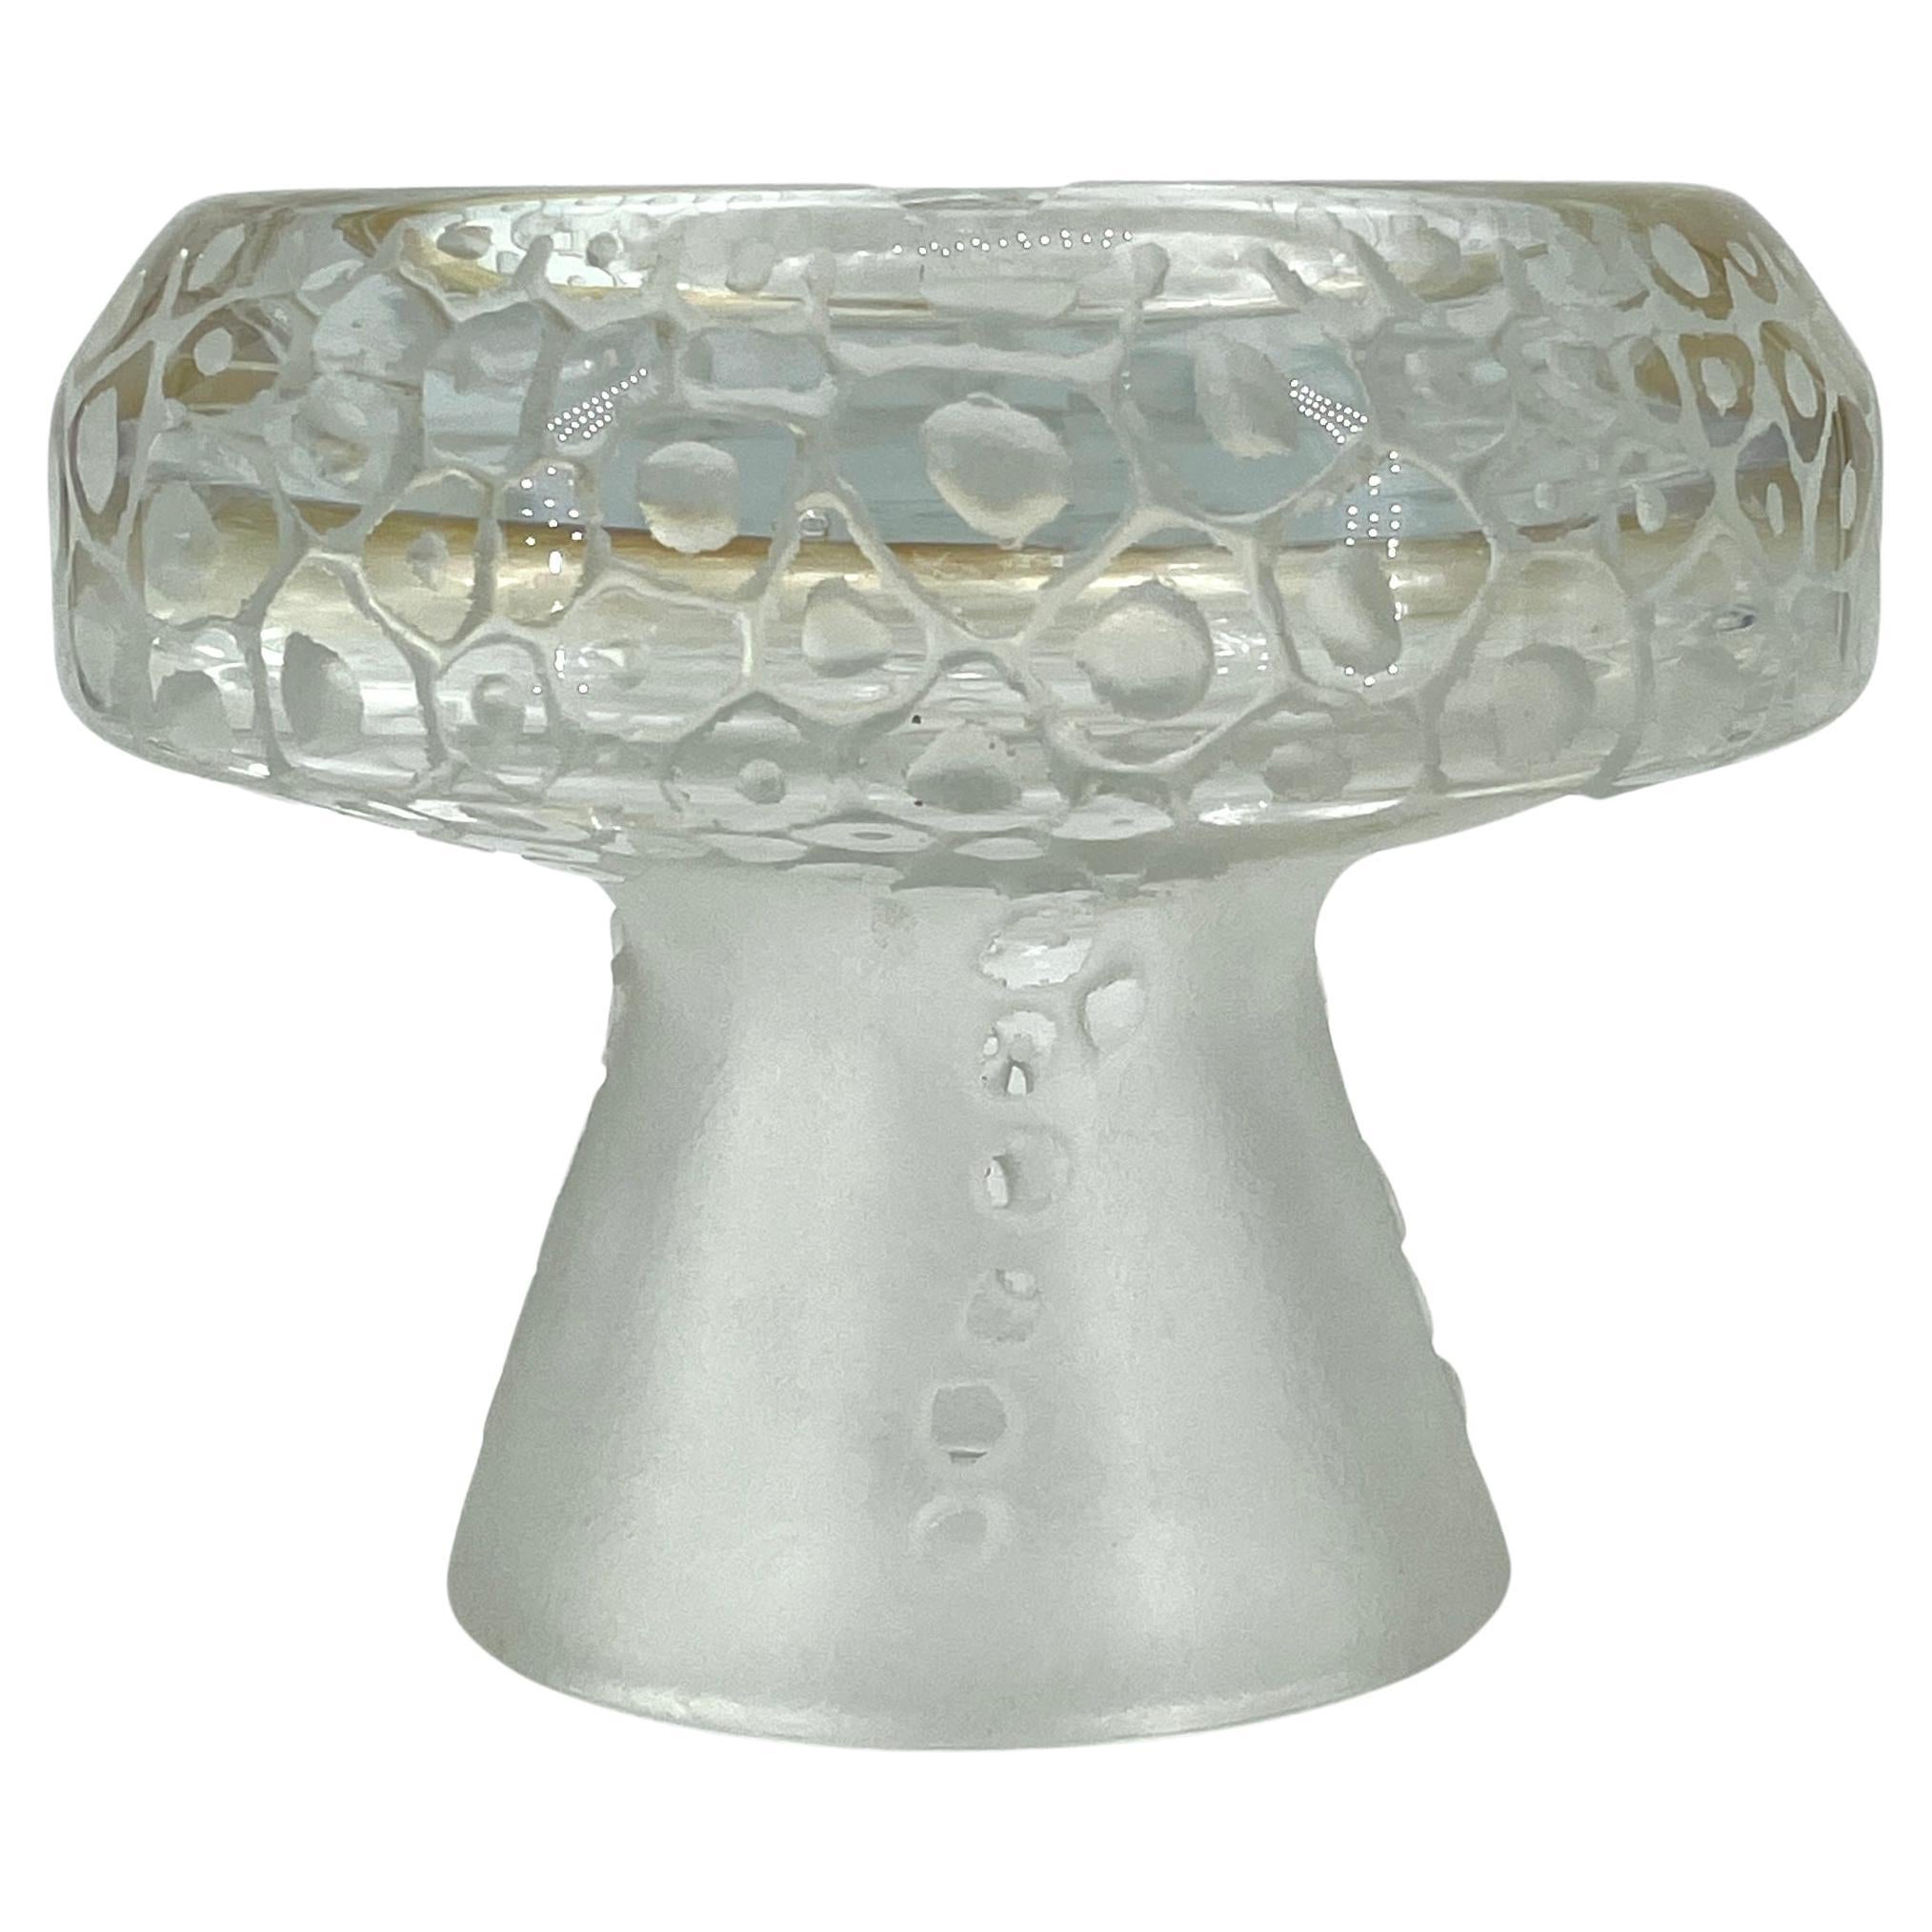 1960s Dolomite Mushroom Art Glass Footed Ashtray Vintage Italian Mid-Century Era For Sale